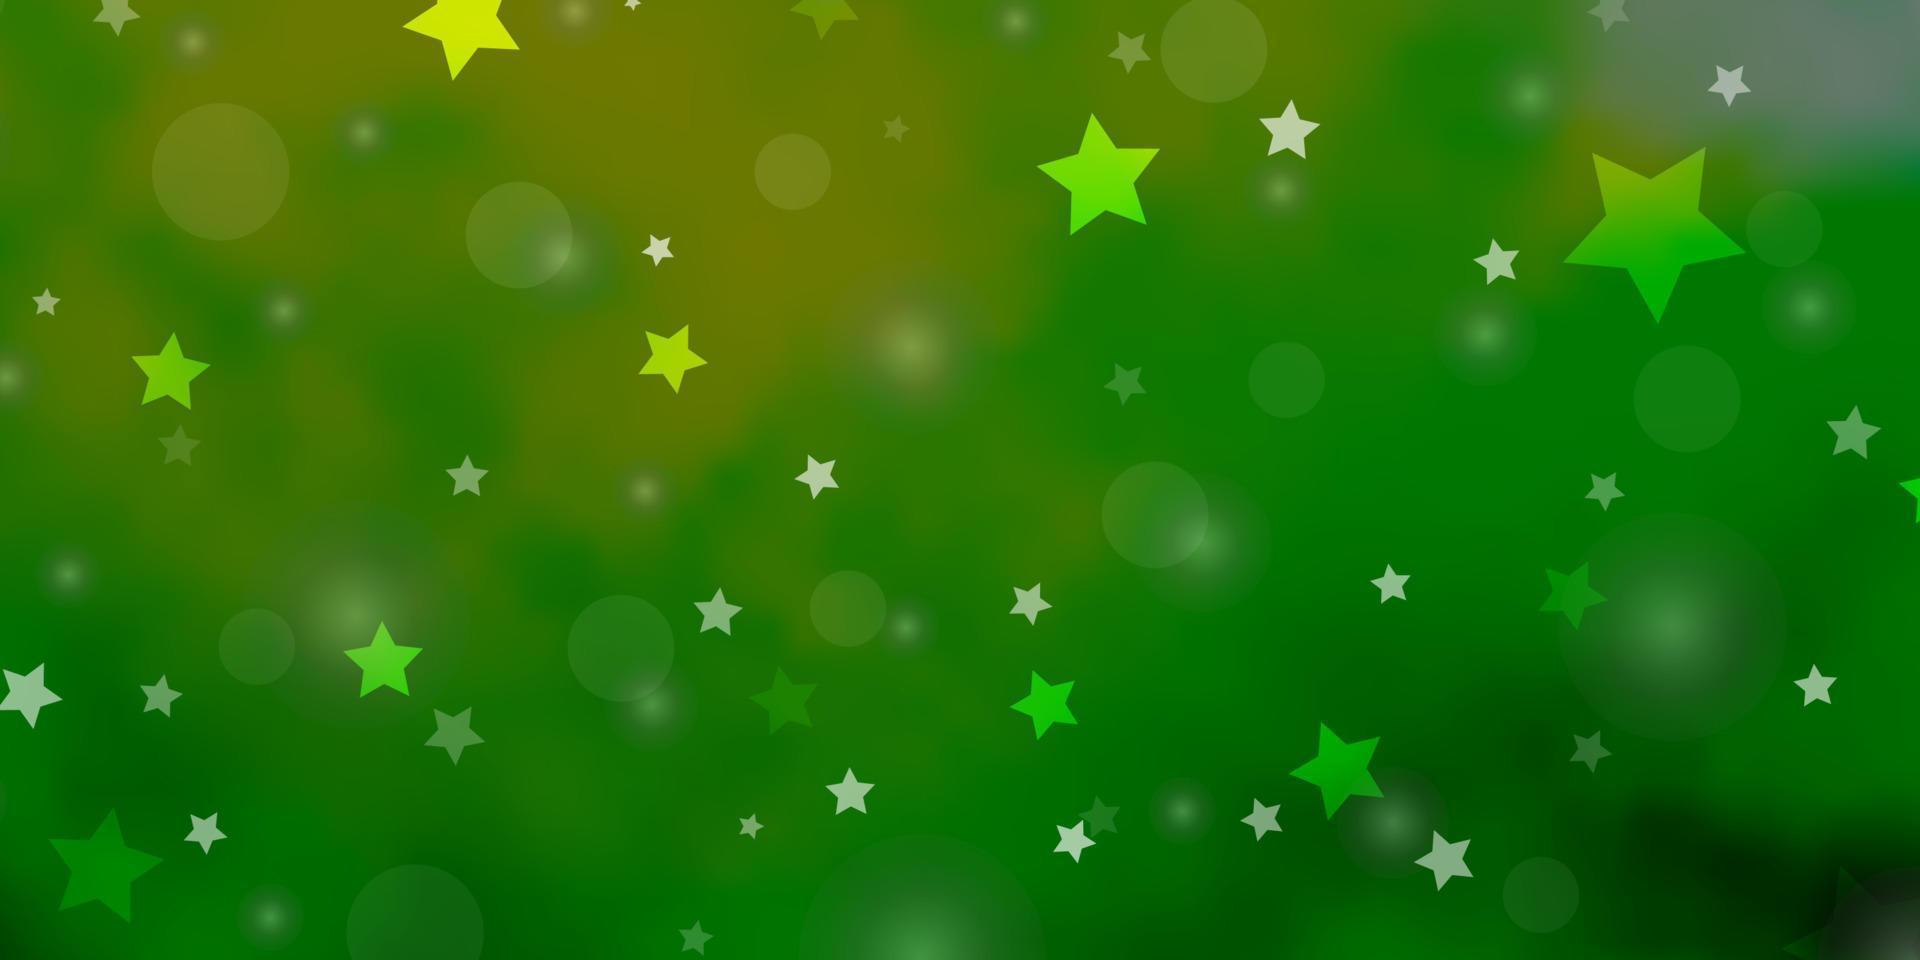 textura de vetor verde e amarelo claro com círculos, estrelas.